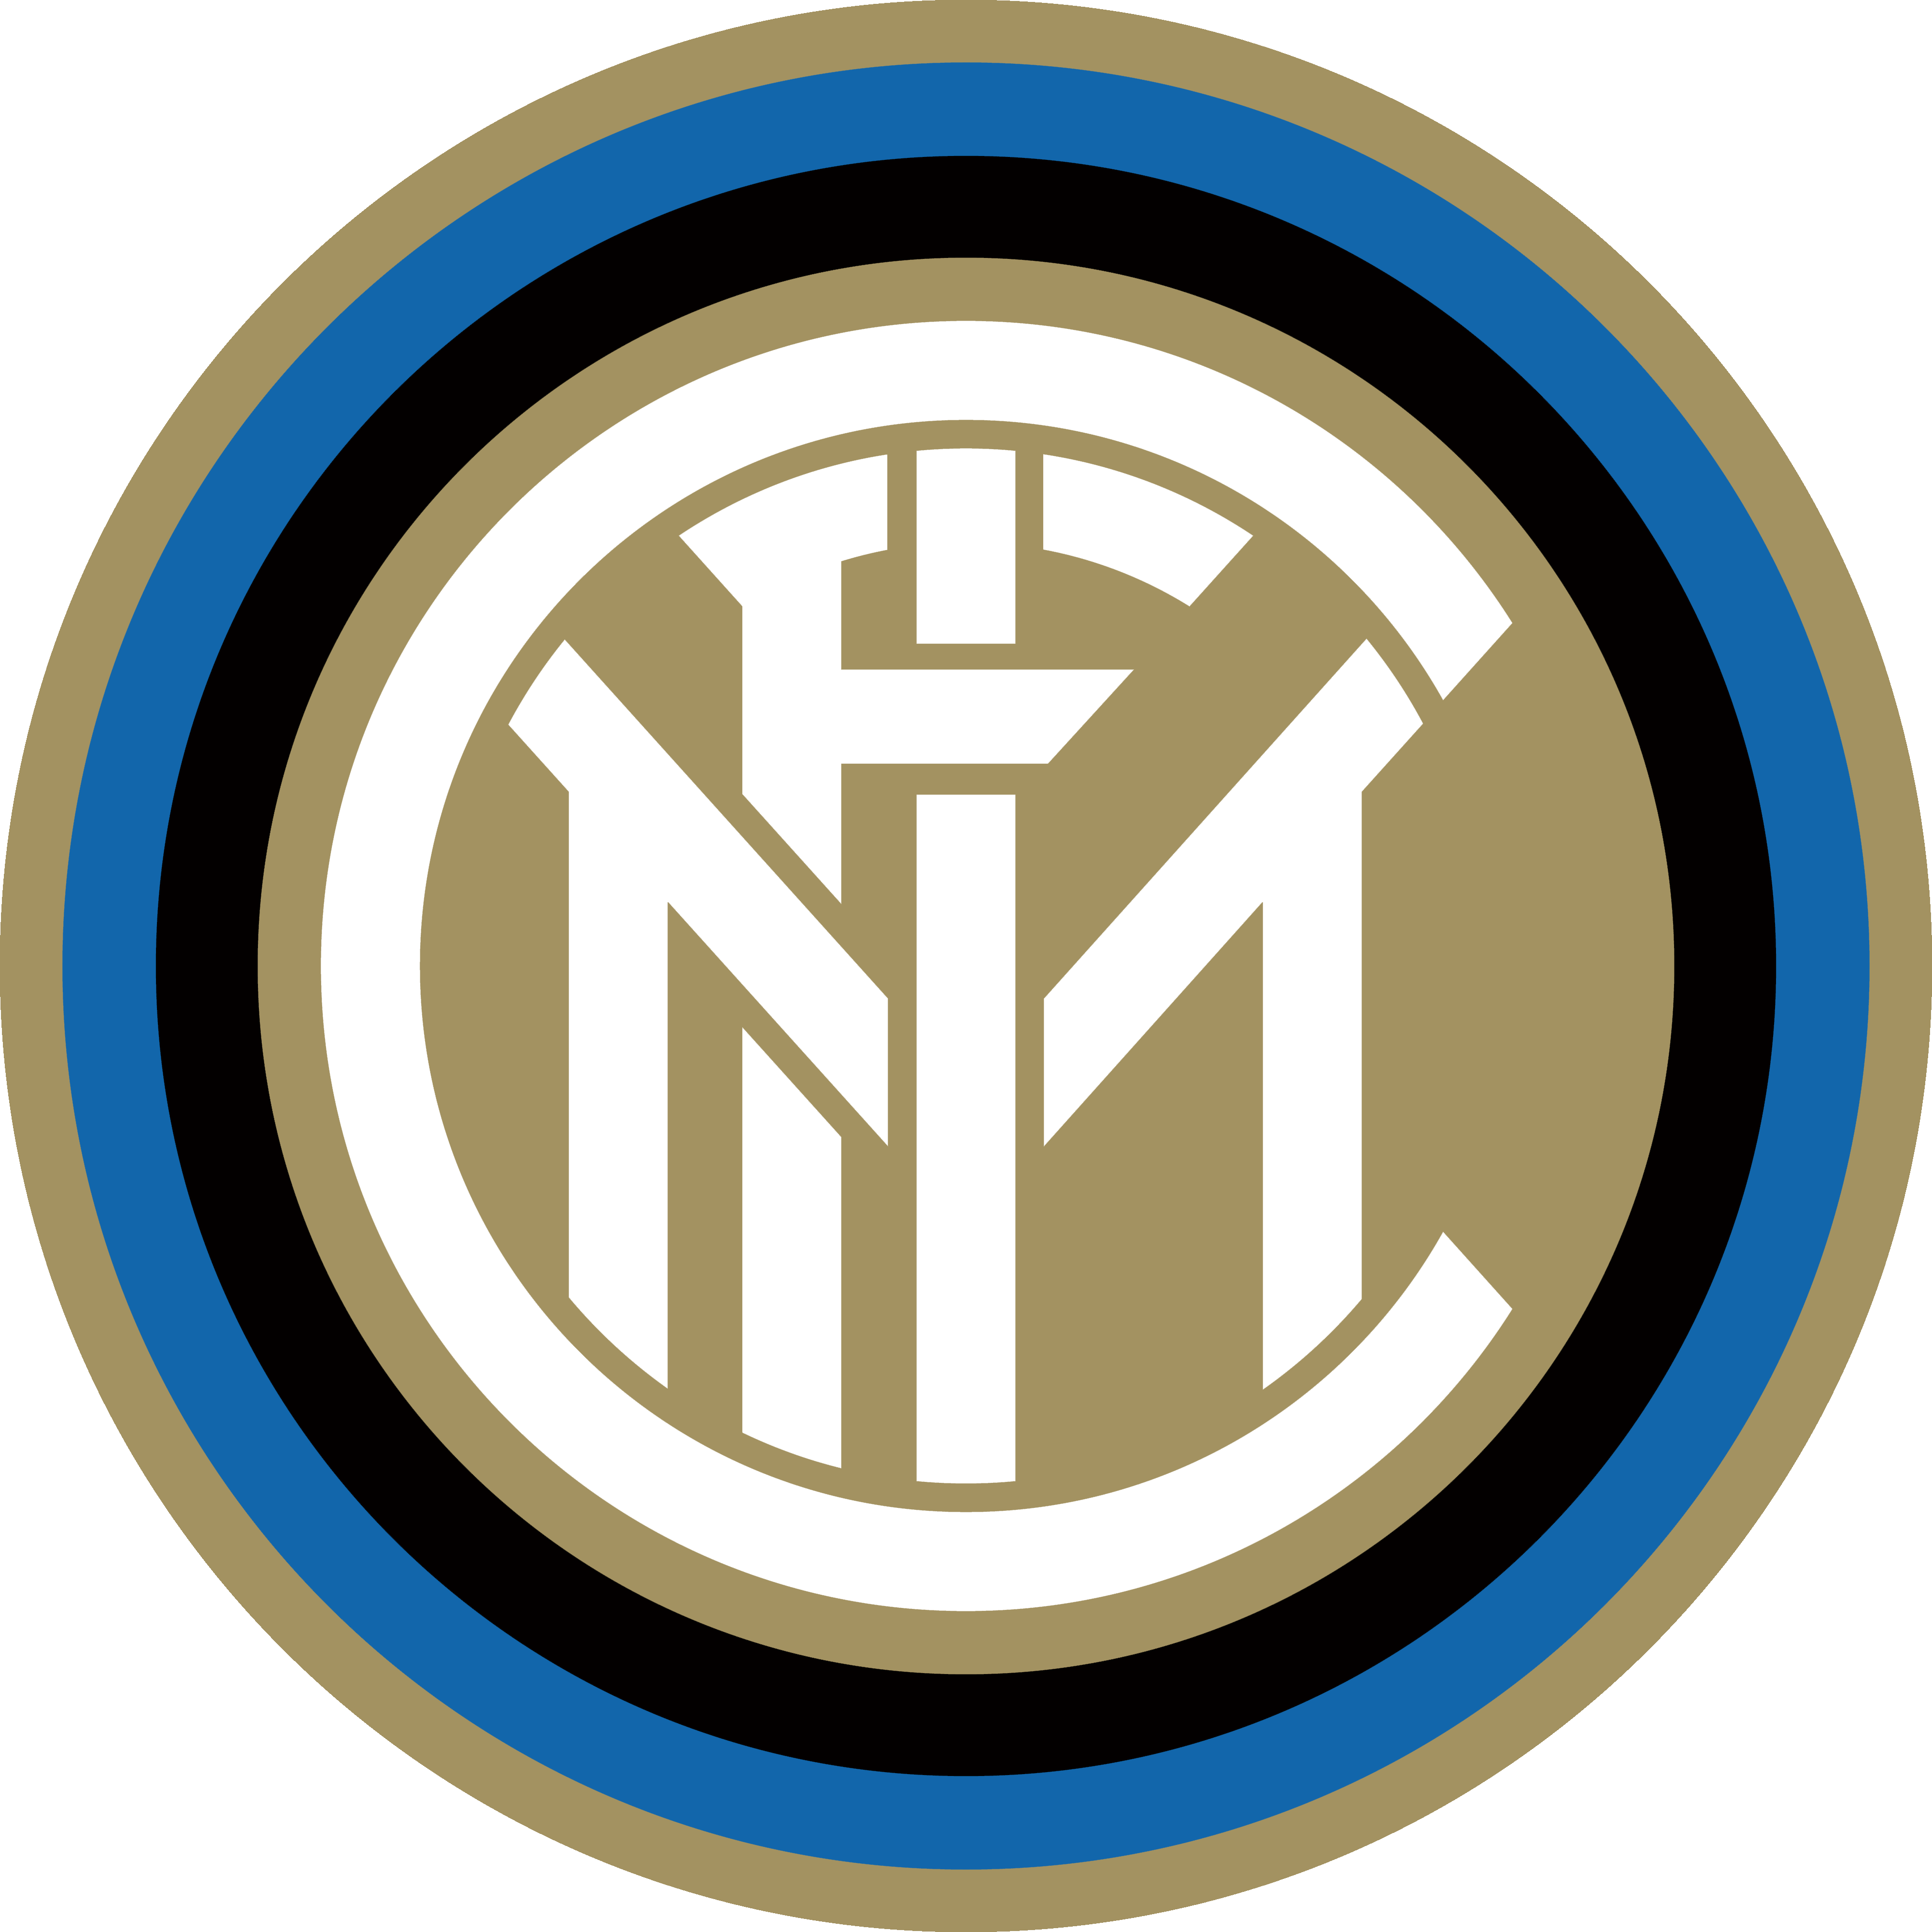 Inter Milan Transparent Image